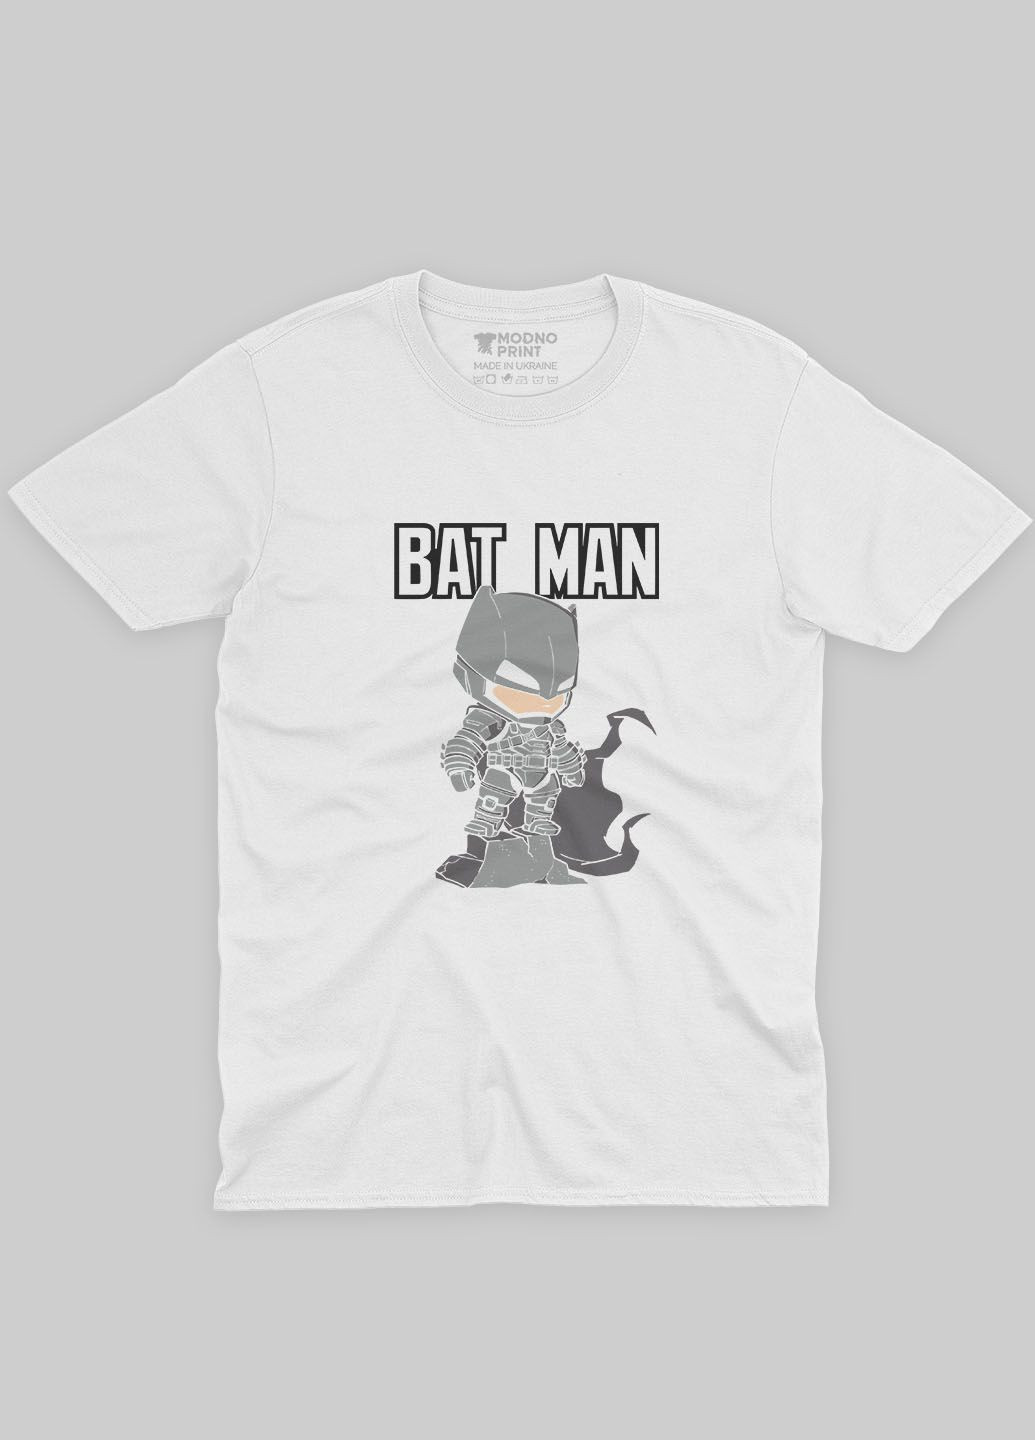 Белая демисезонная футболка для девочки с принтом супергероя - бэтмен (ts001-1-whi-006-003-014-g) Modno